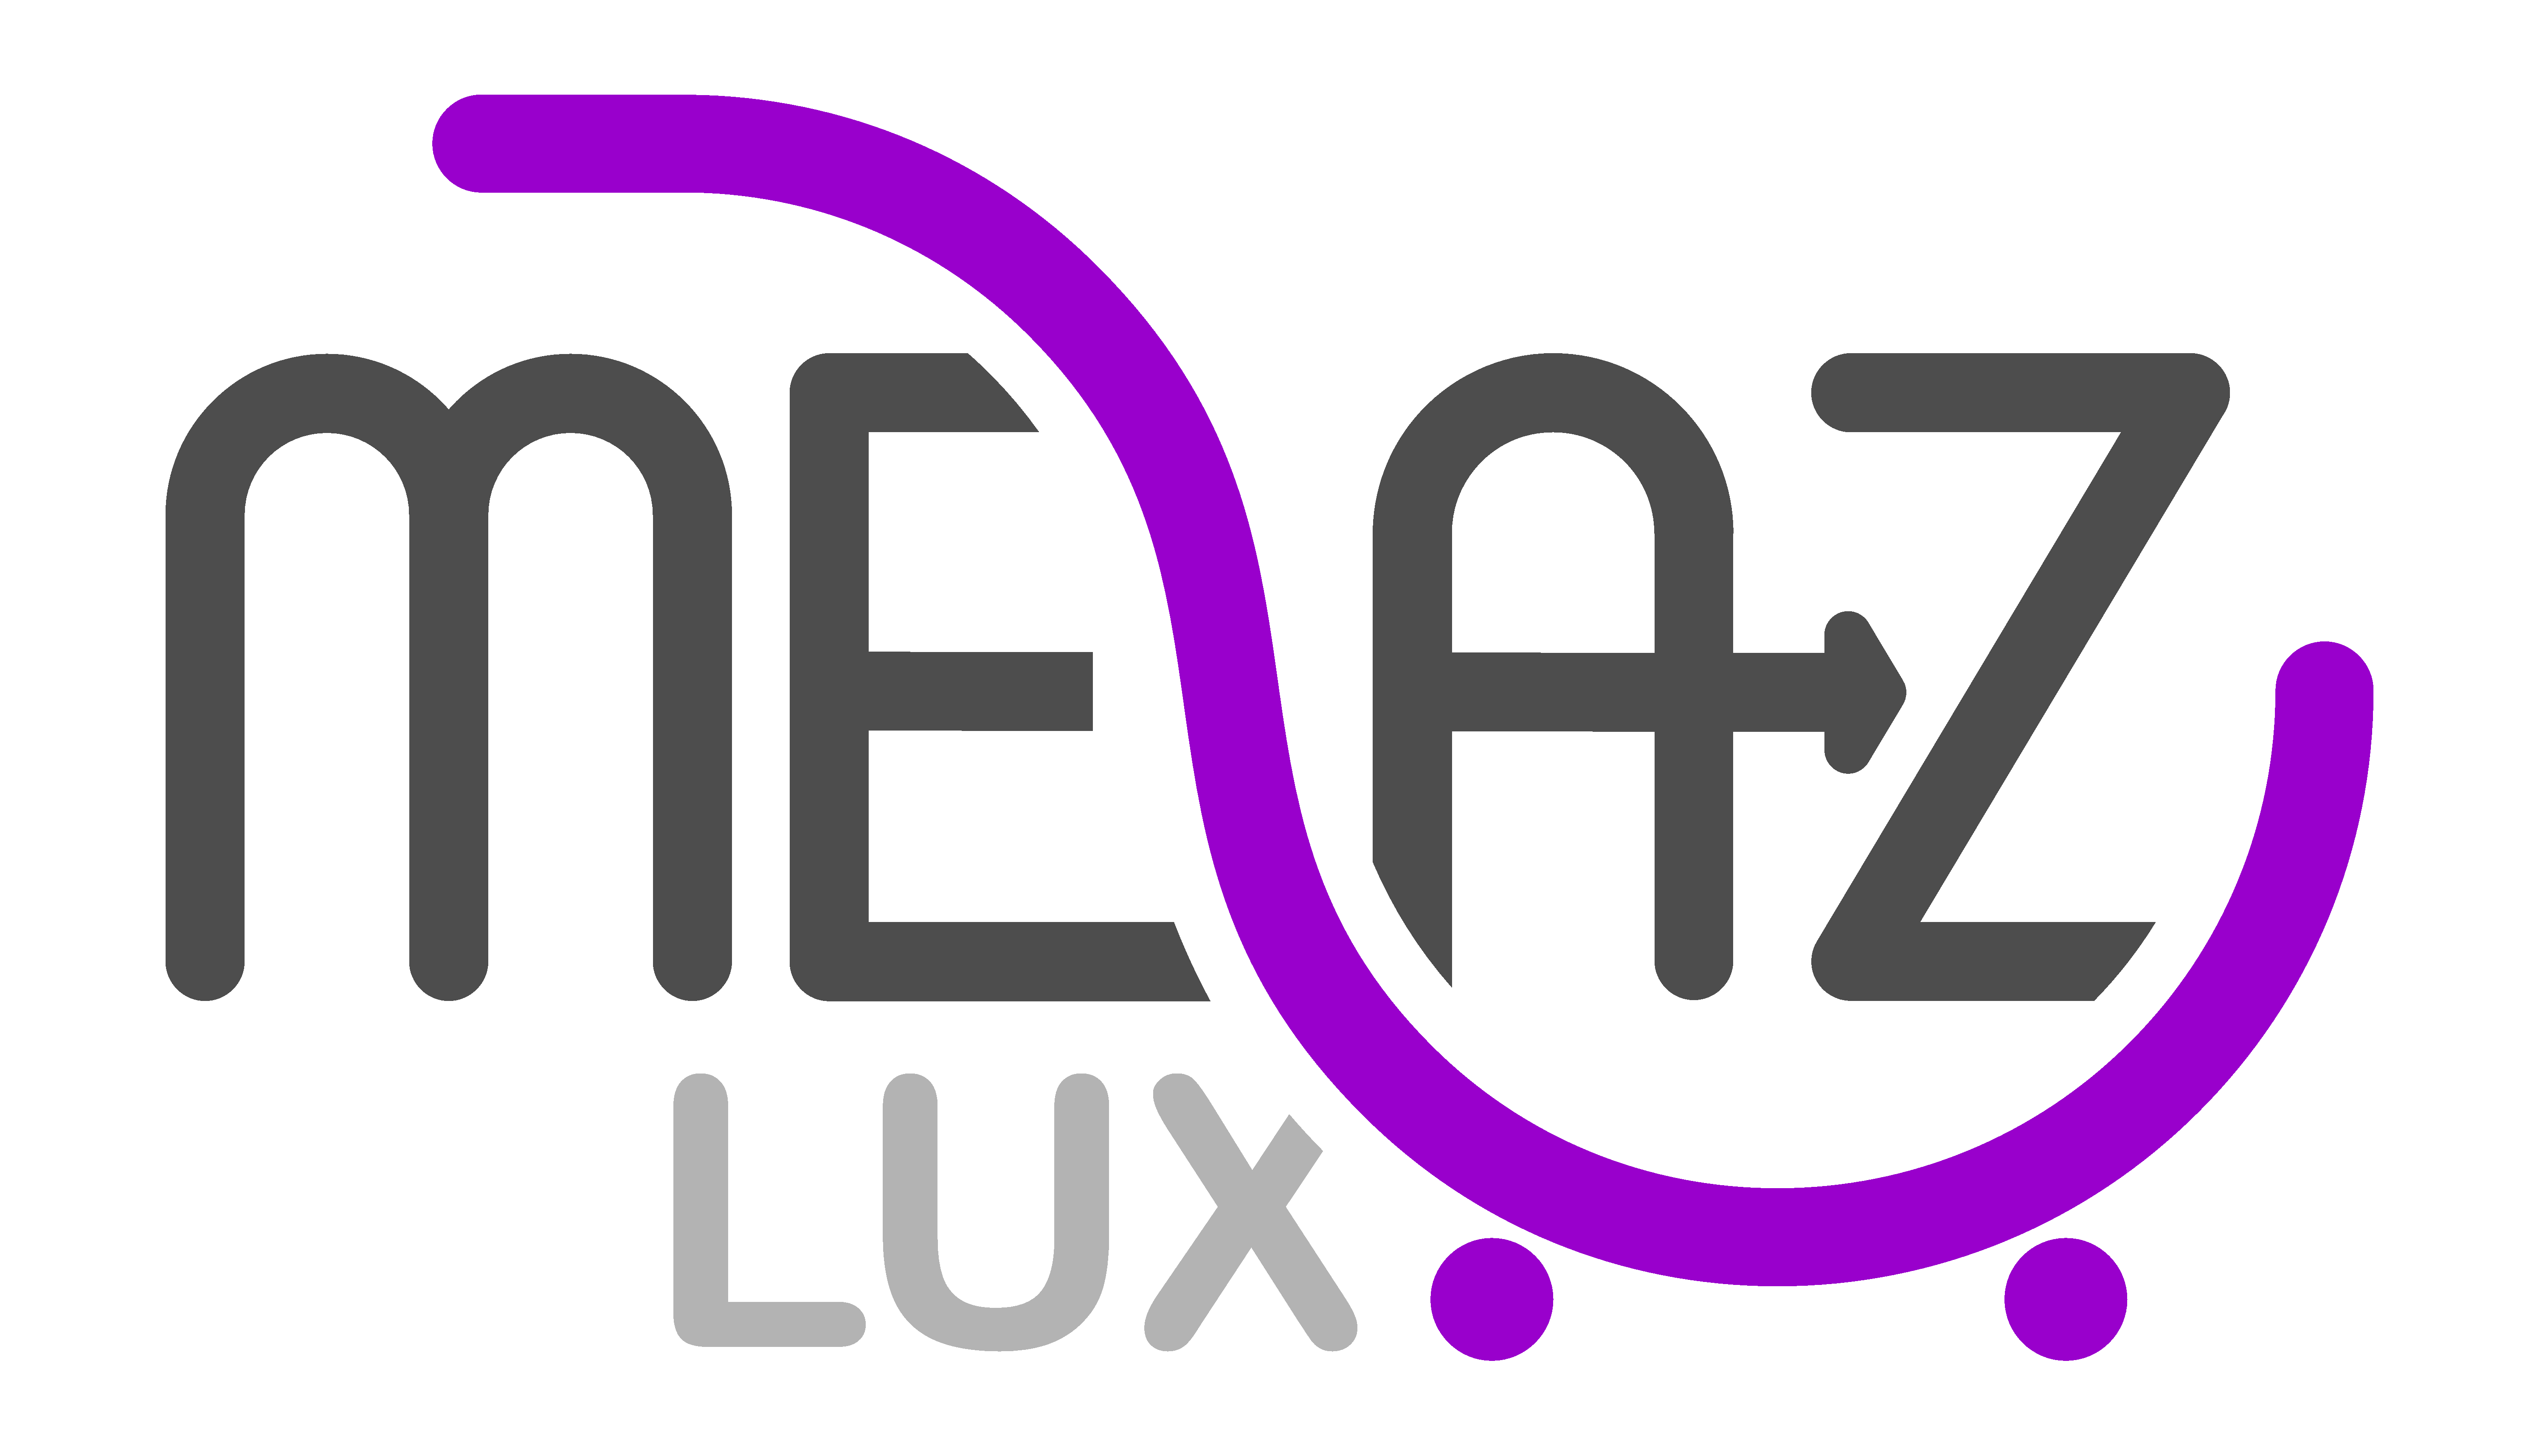 MEAZLUX.logo_.white-bg